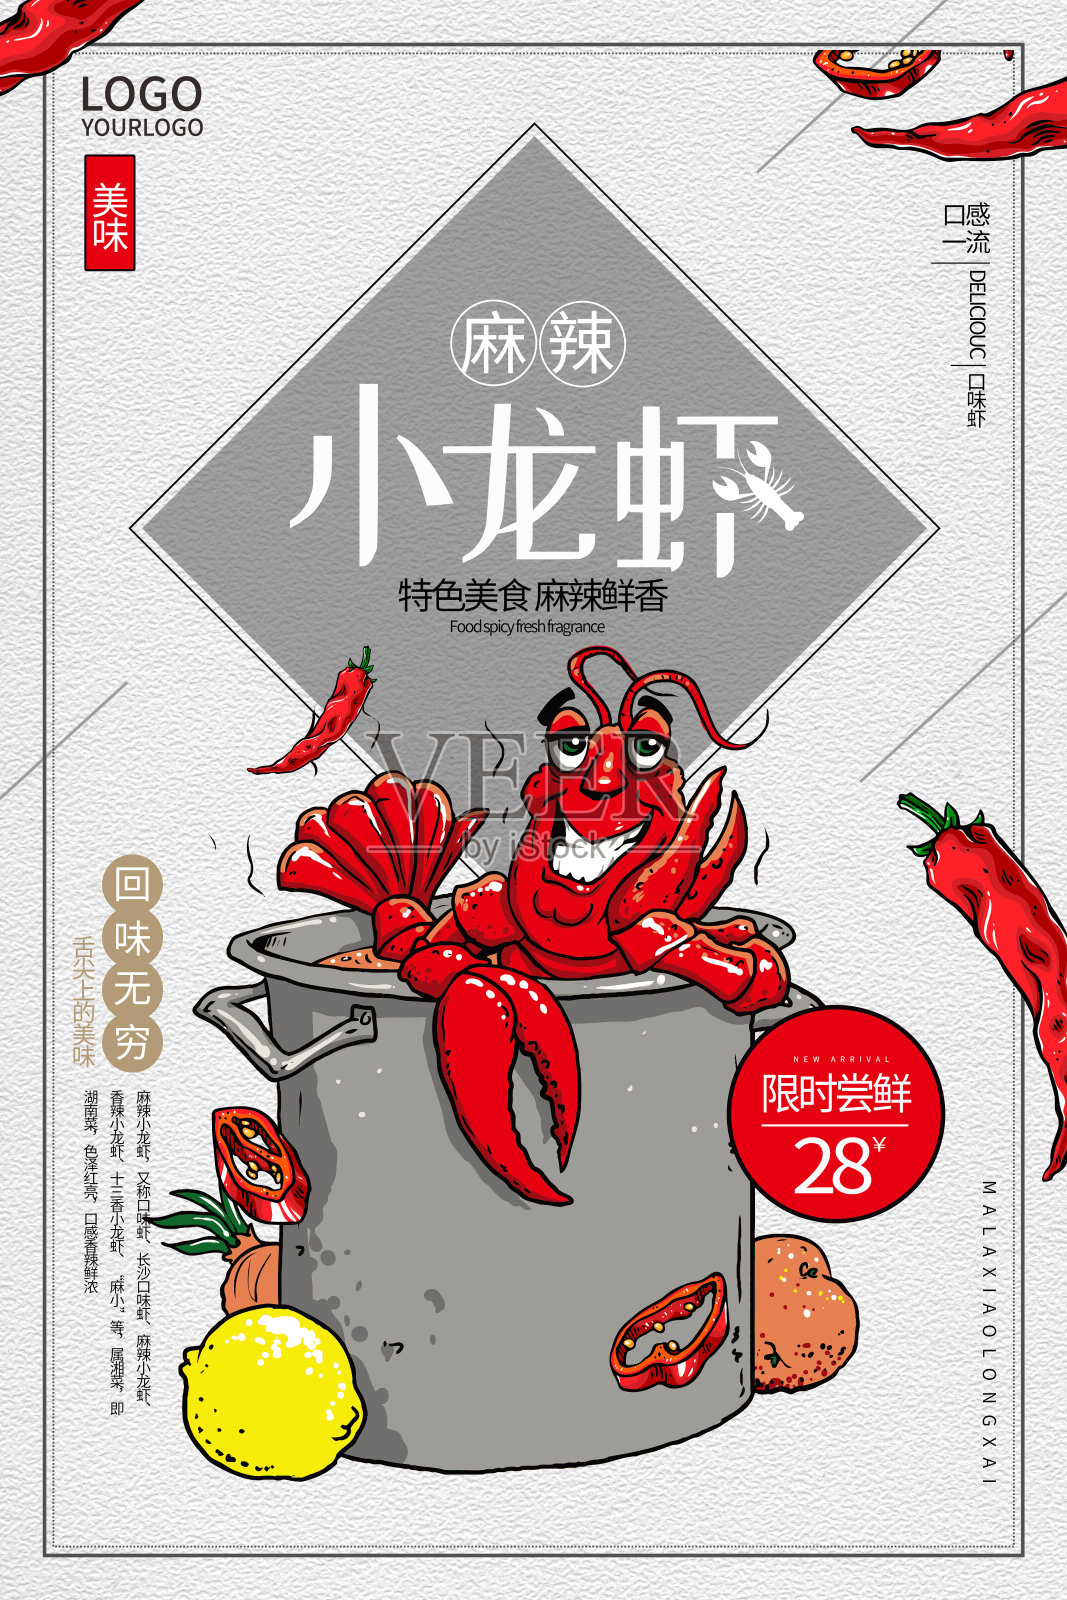 精美时尚美味小龙虾卡通插画海报设计模板素材